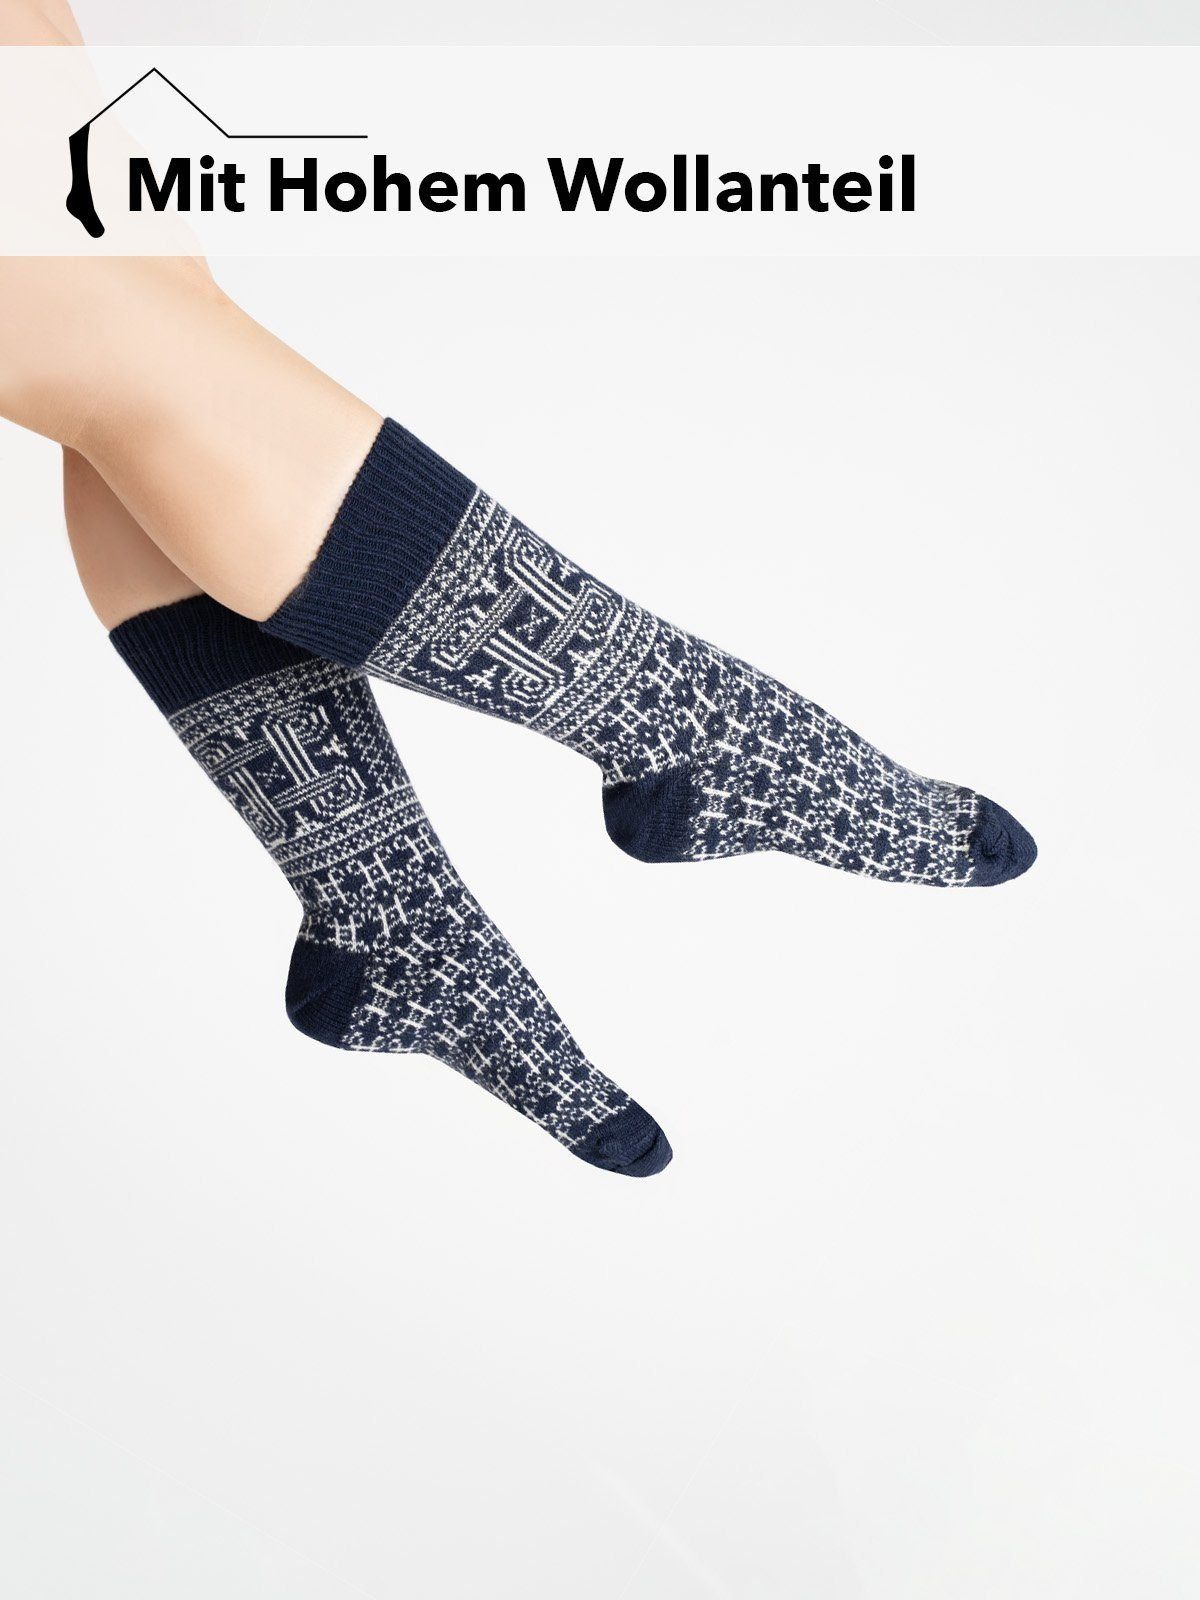 HomeOfSocks Socken Skandinavische Wollsocke Finnland Motiv, Glückssymbol Flagge Hannunvaakuna "Finnland"